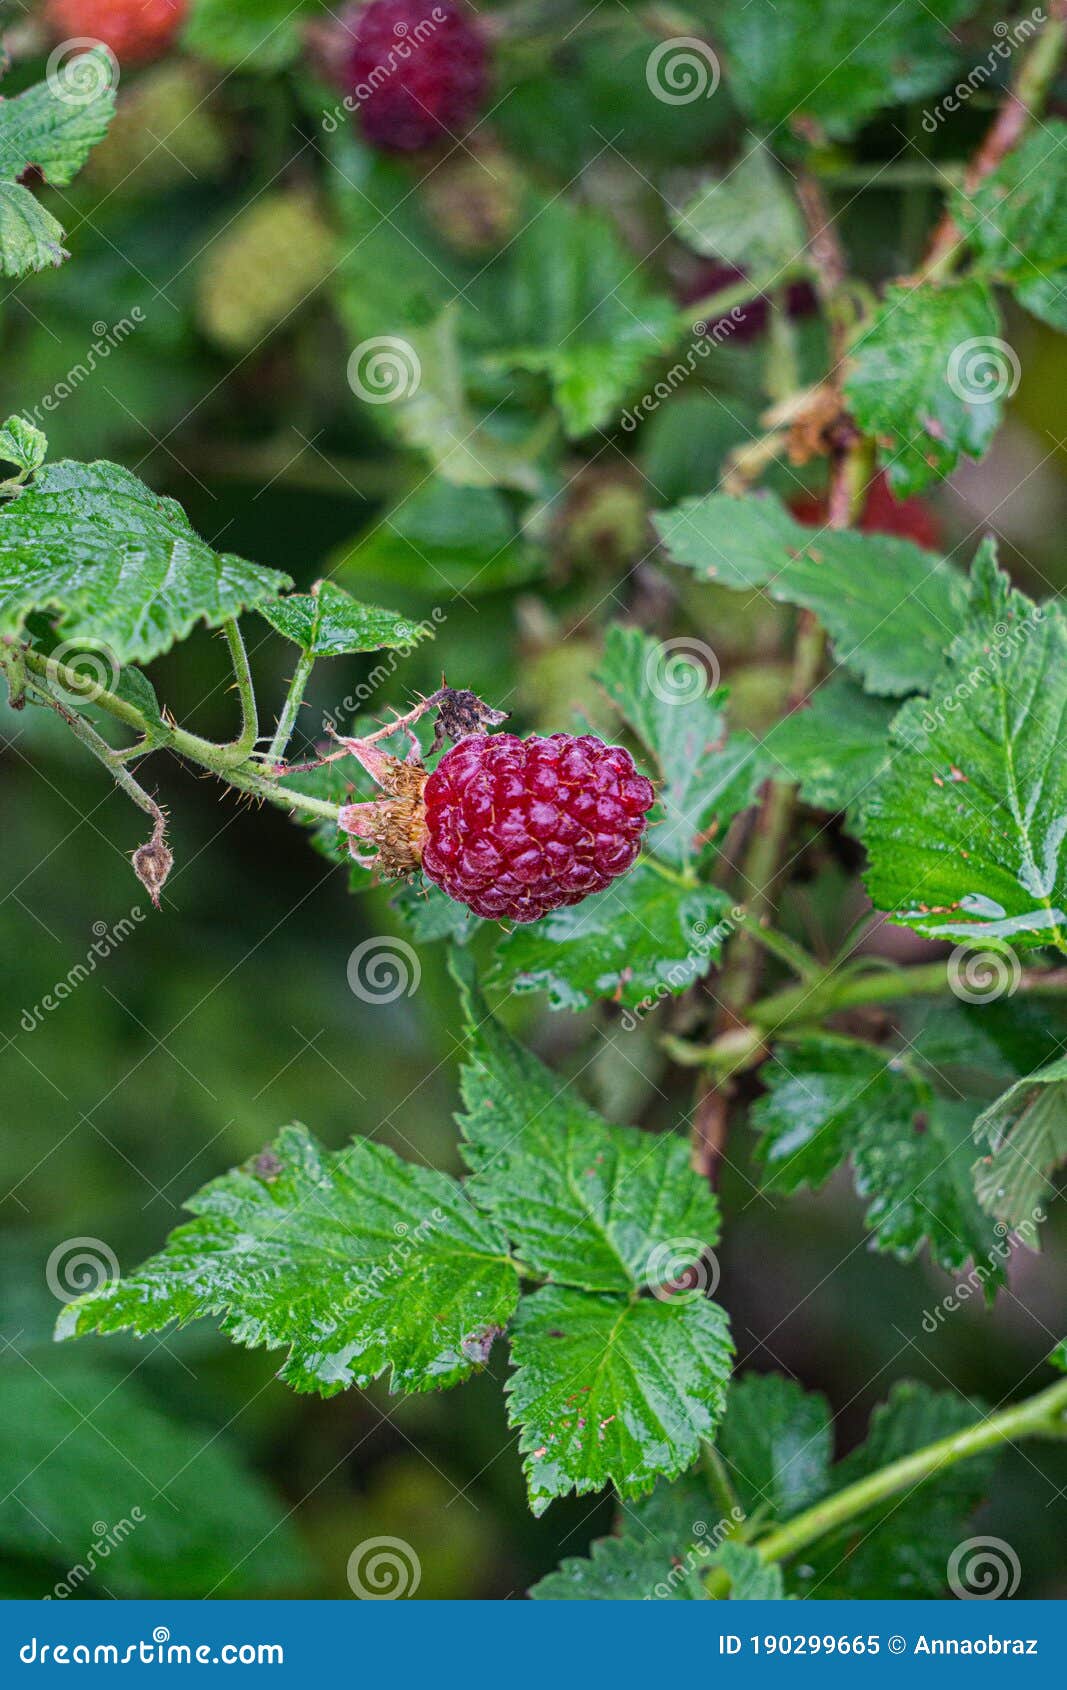 红树莓矢量素材免费下载 - 觅知网